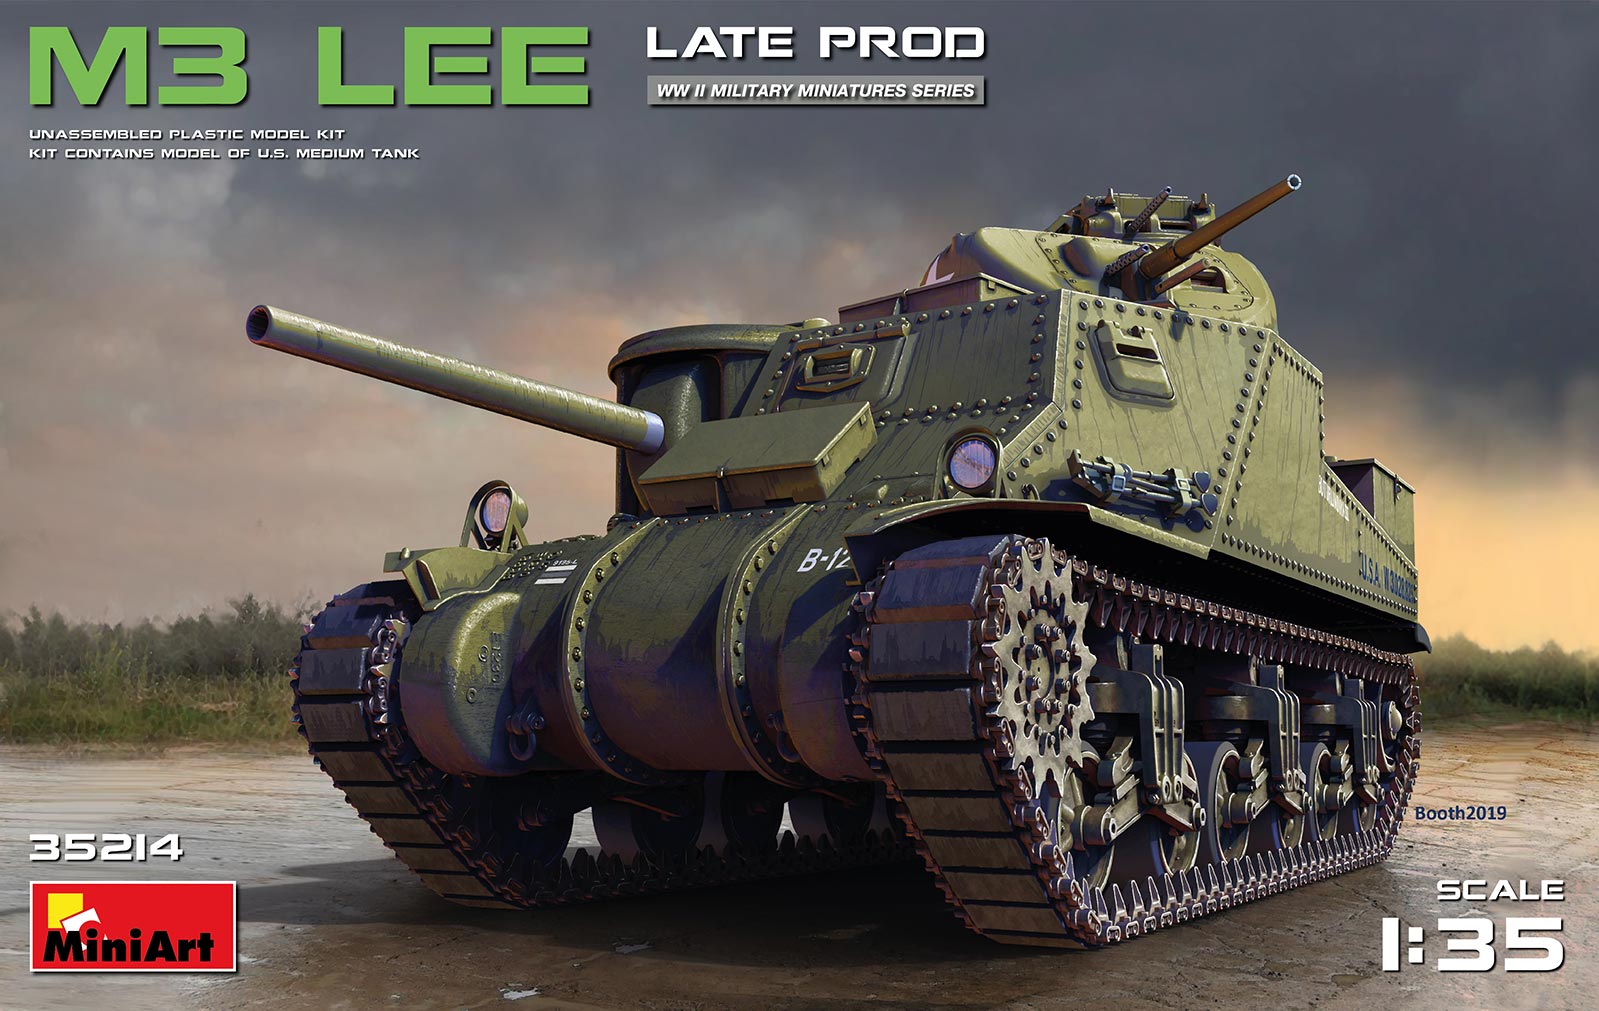 35214  техника и вооружение  M3 Lee Late Prod  (1:35)